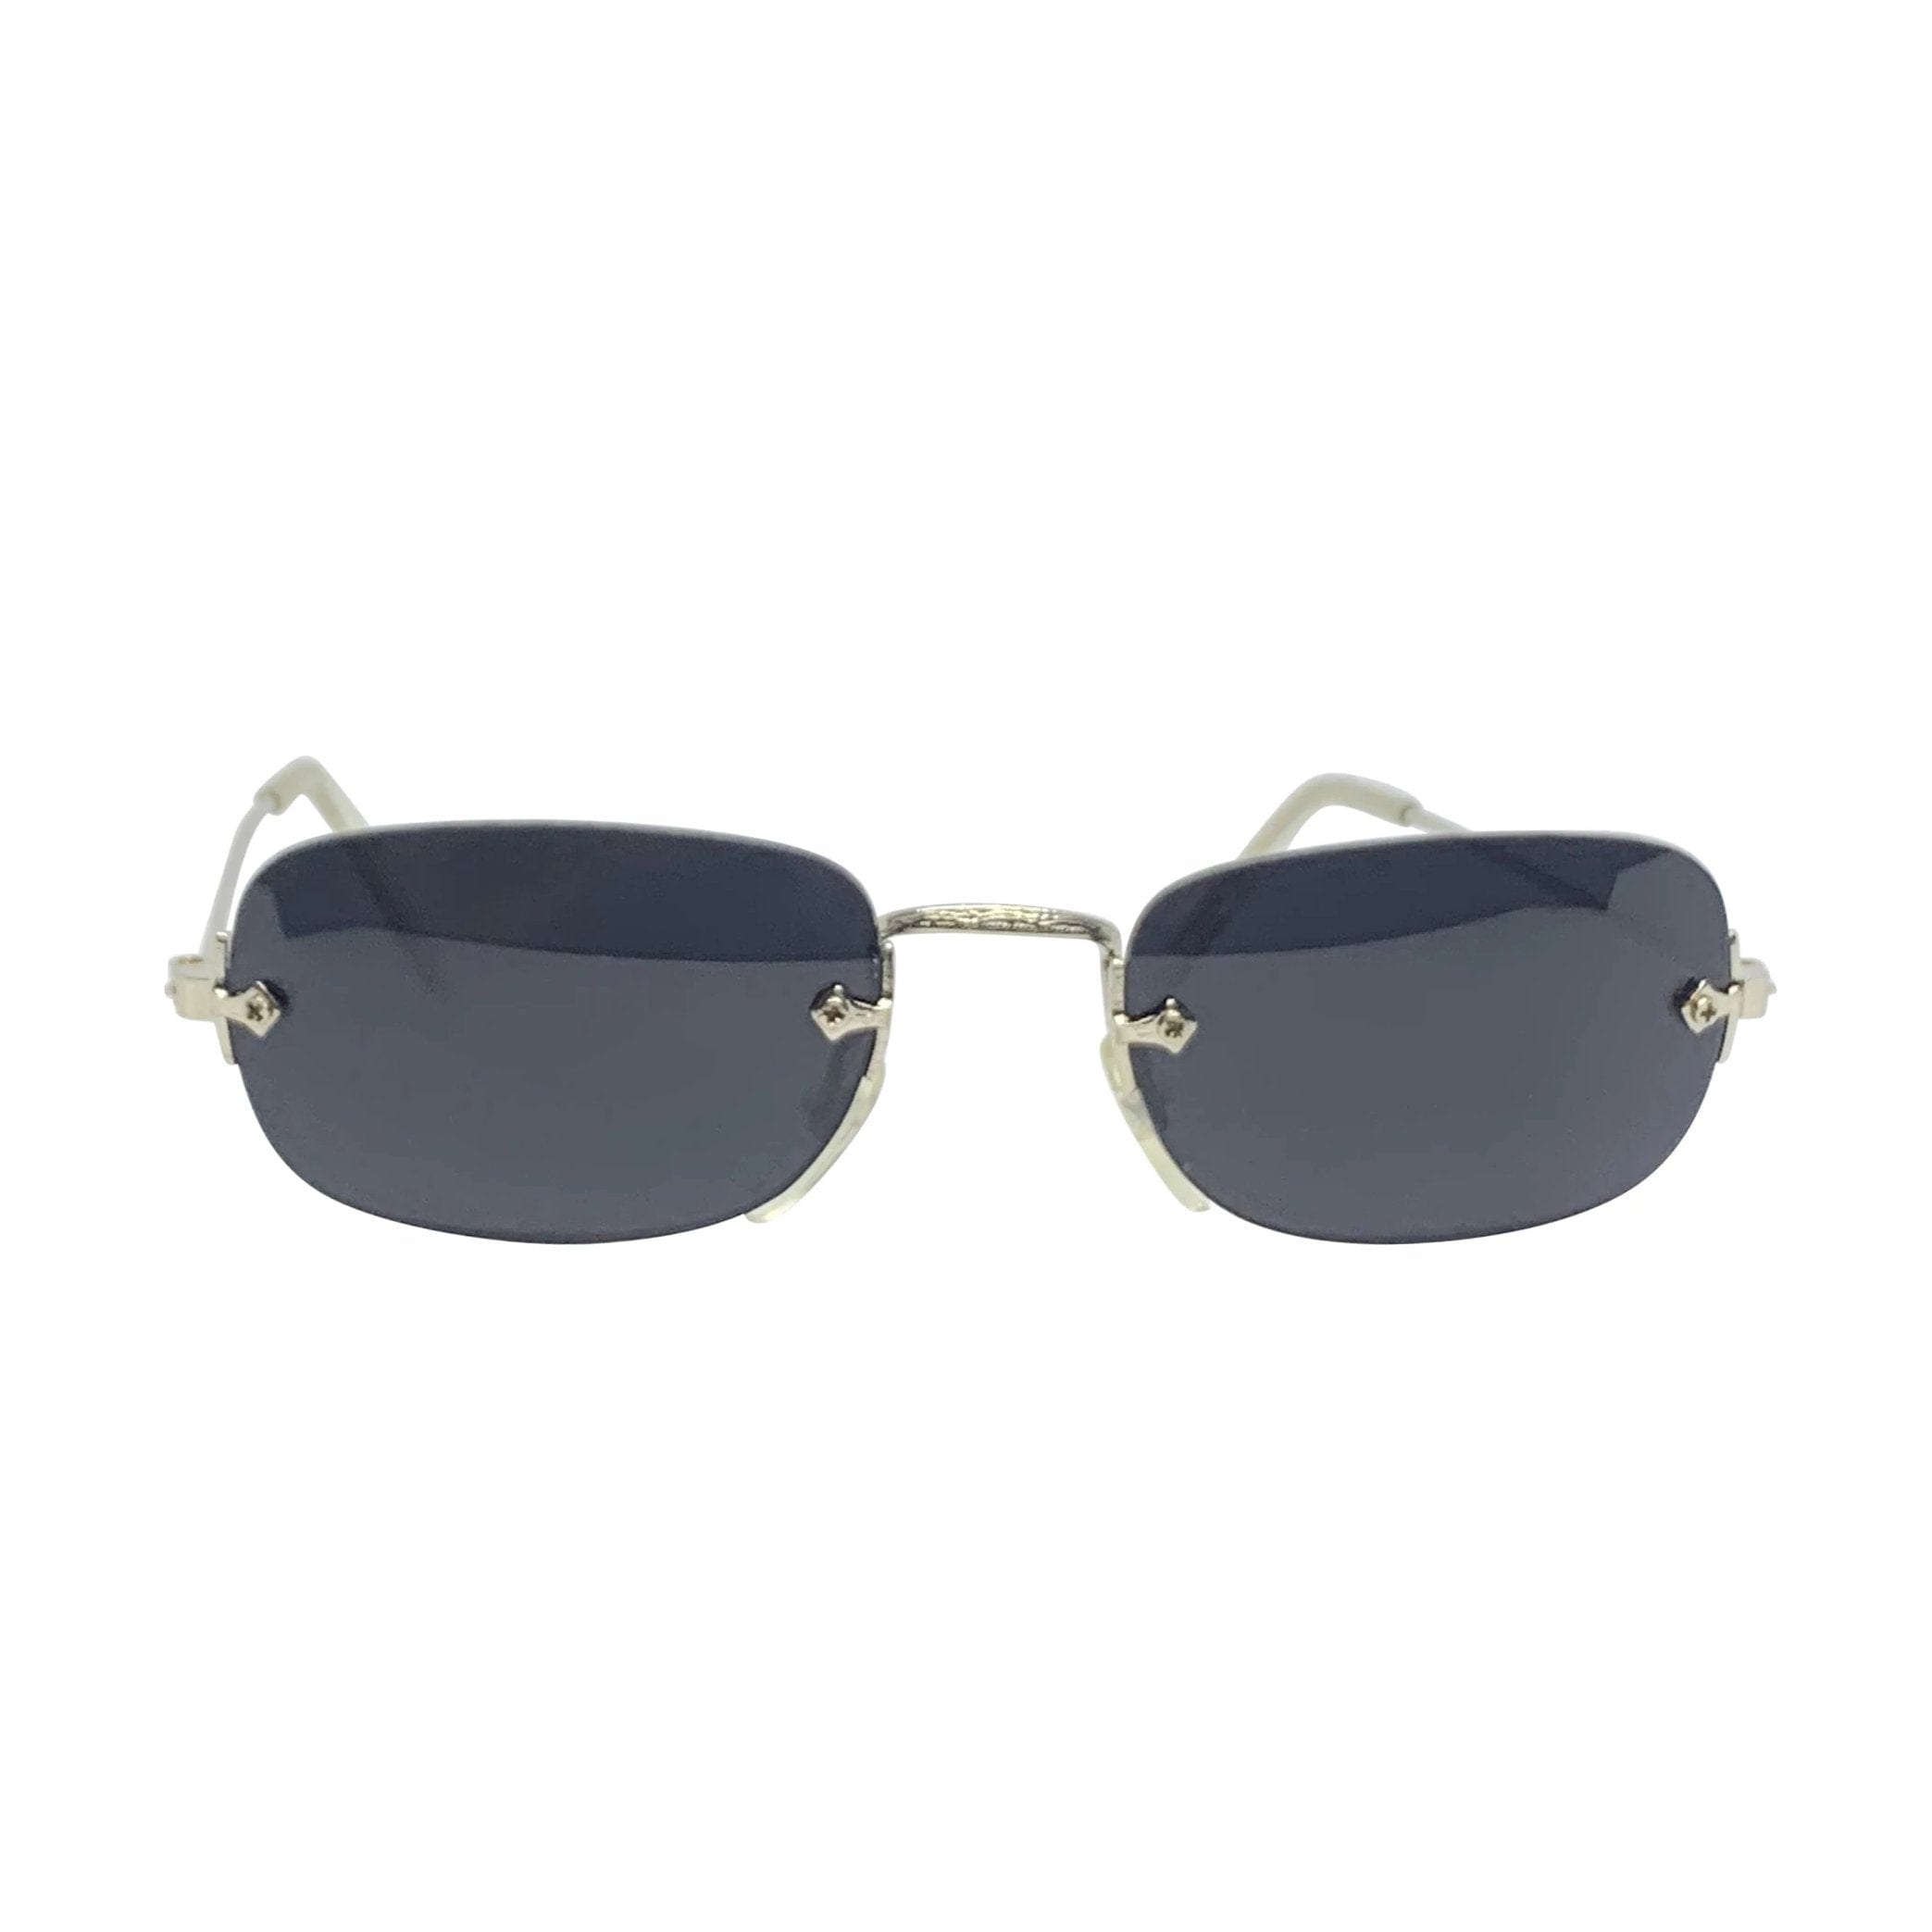 SOUP Rimless 90s Silver/Super Dark Sunglasses